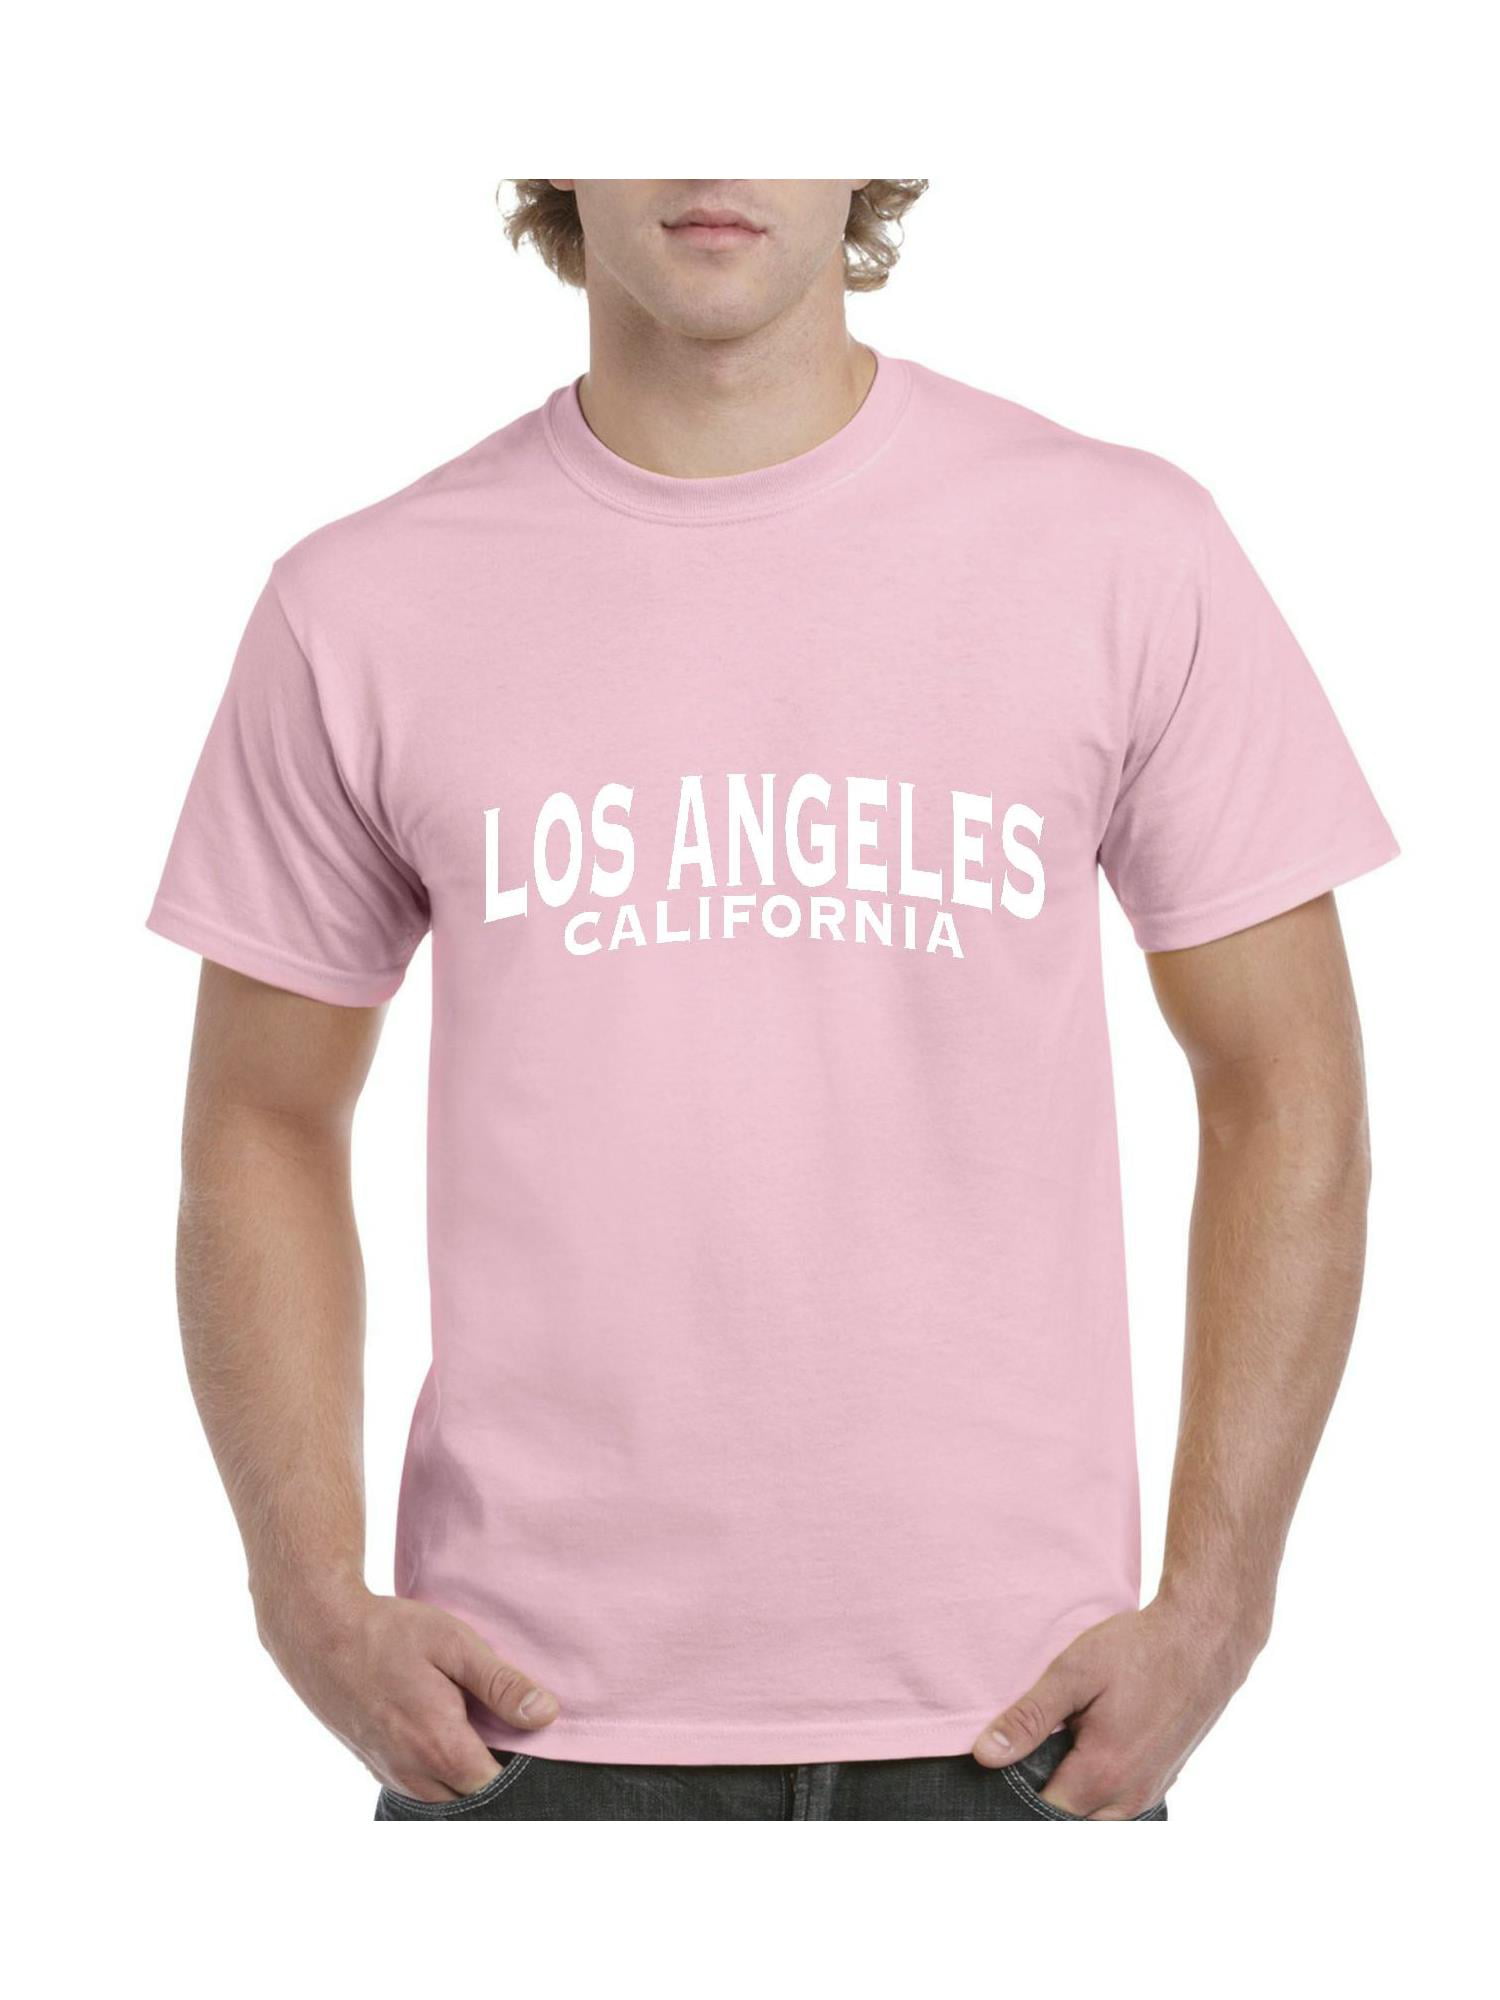 L.A LOS ANGELES CALIFORNIA FASHION SUMMER MEN/'S V-NECK SHORT SLEEVE T-SHIRT